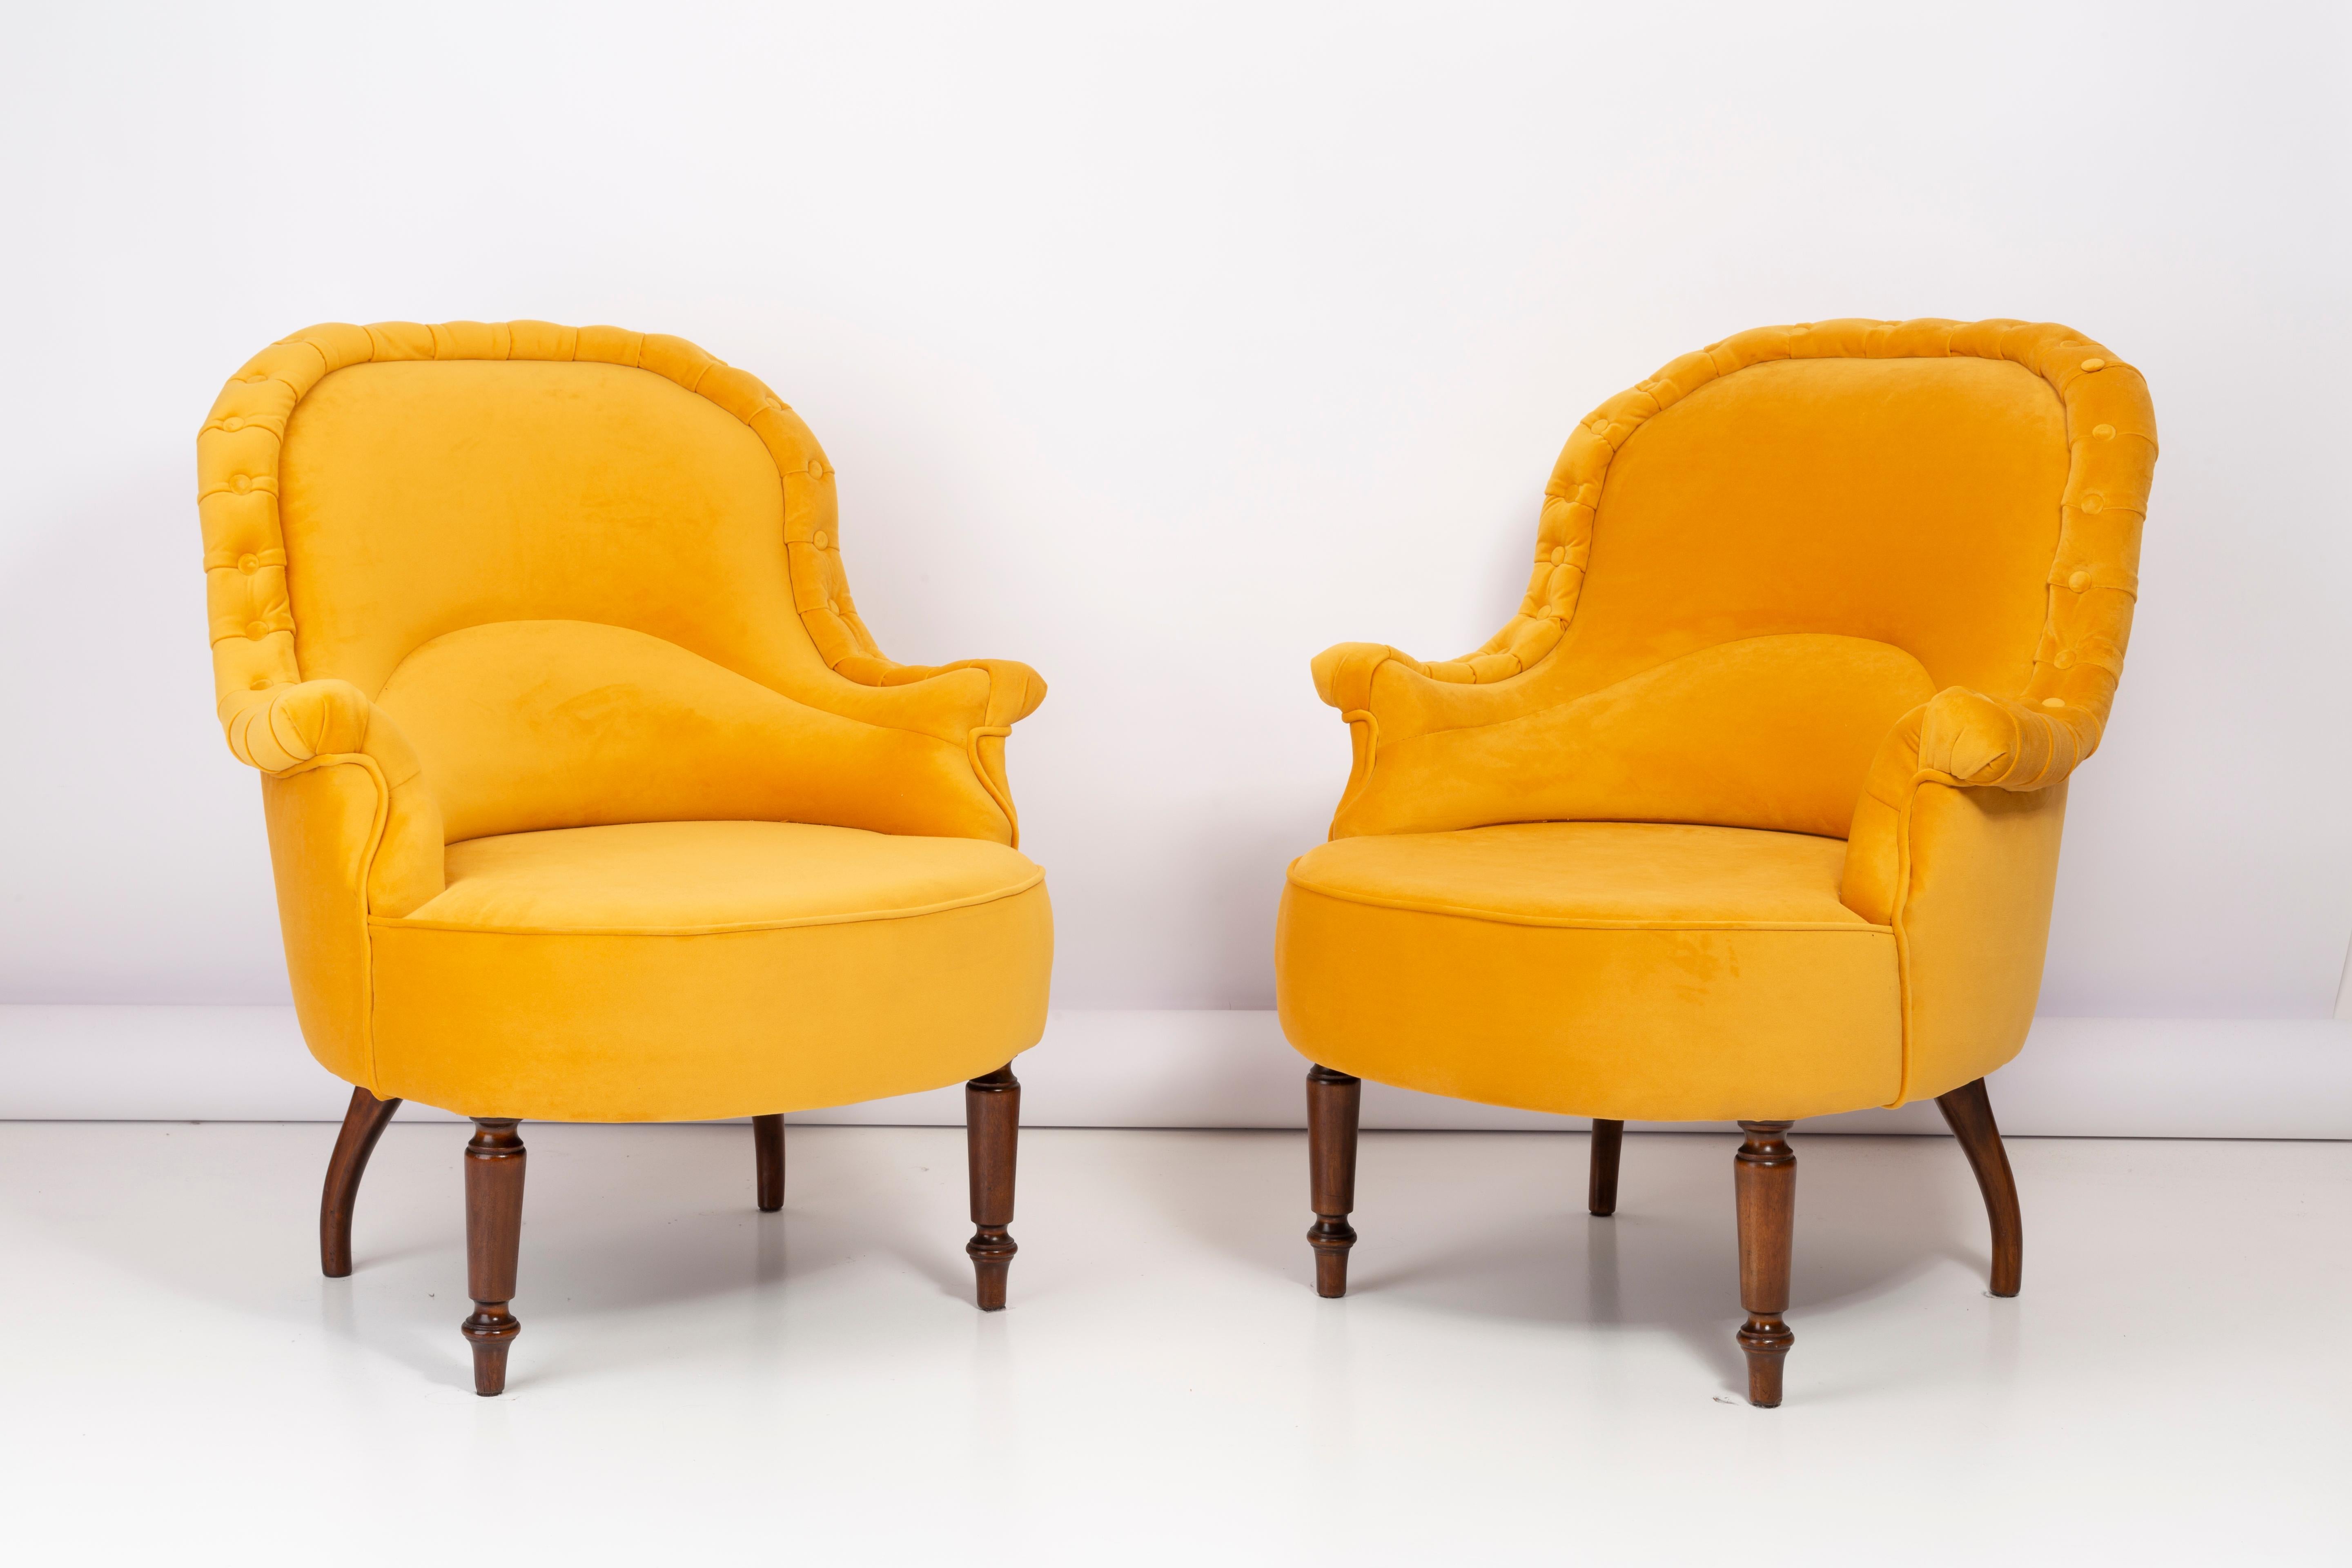 Deutsche Sessel und Sofas, hergestellt in den 1930er Jahren in Berlin. Das Set ist nach einer gründlichen Renovierung der Polsterung und Tischlerei. Die Holzbeine werden gründlich gereinigt und mit einem seidenmatten Lack in der Farbe einer Nuss